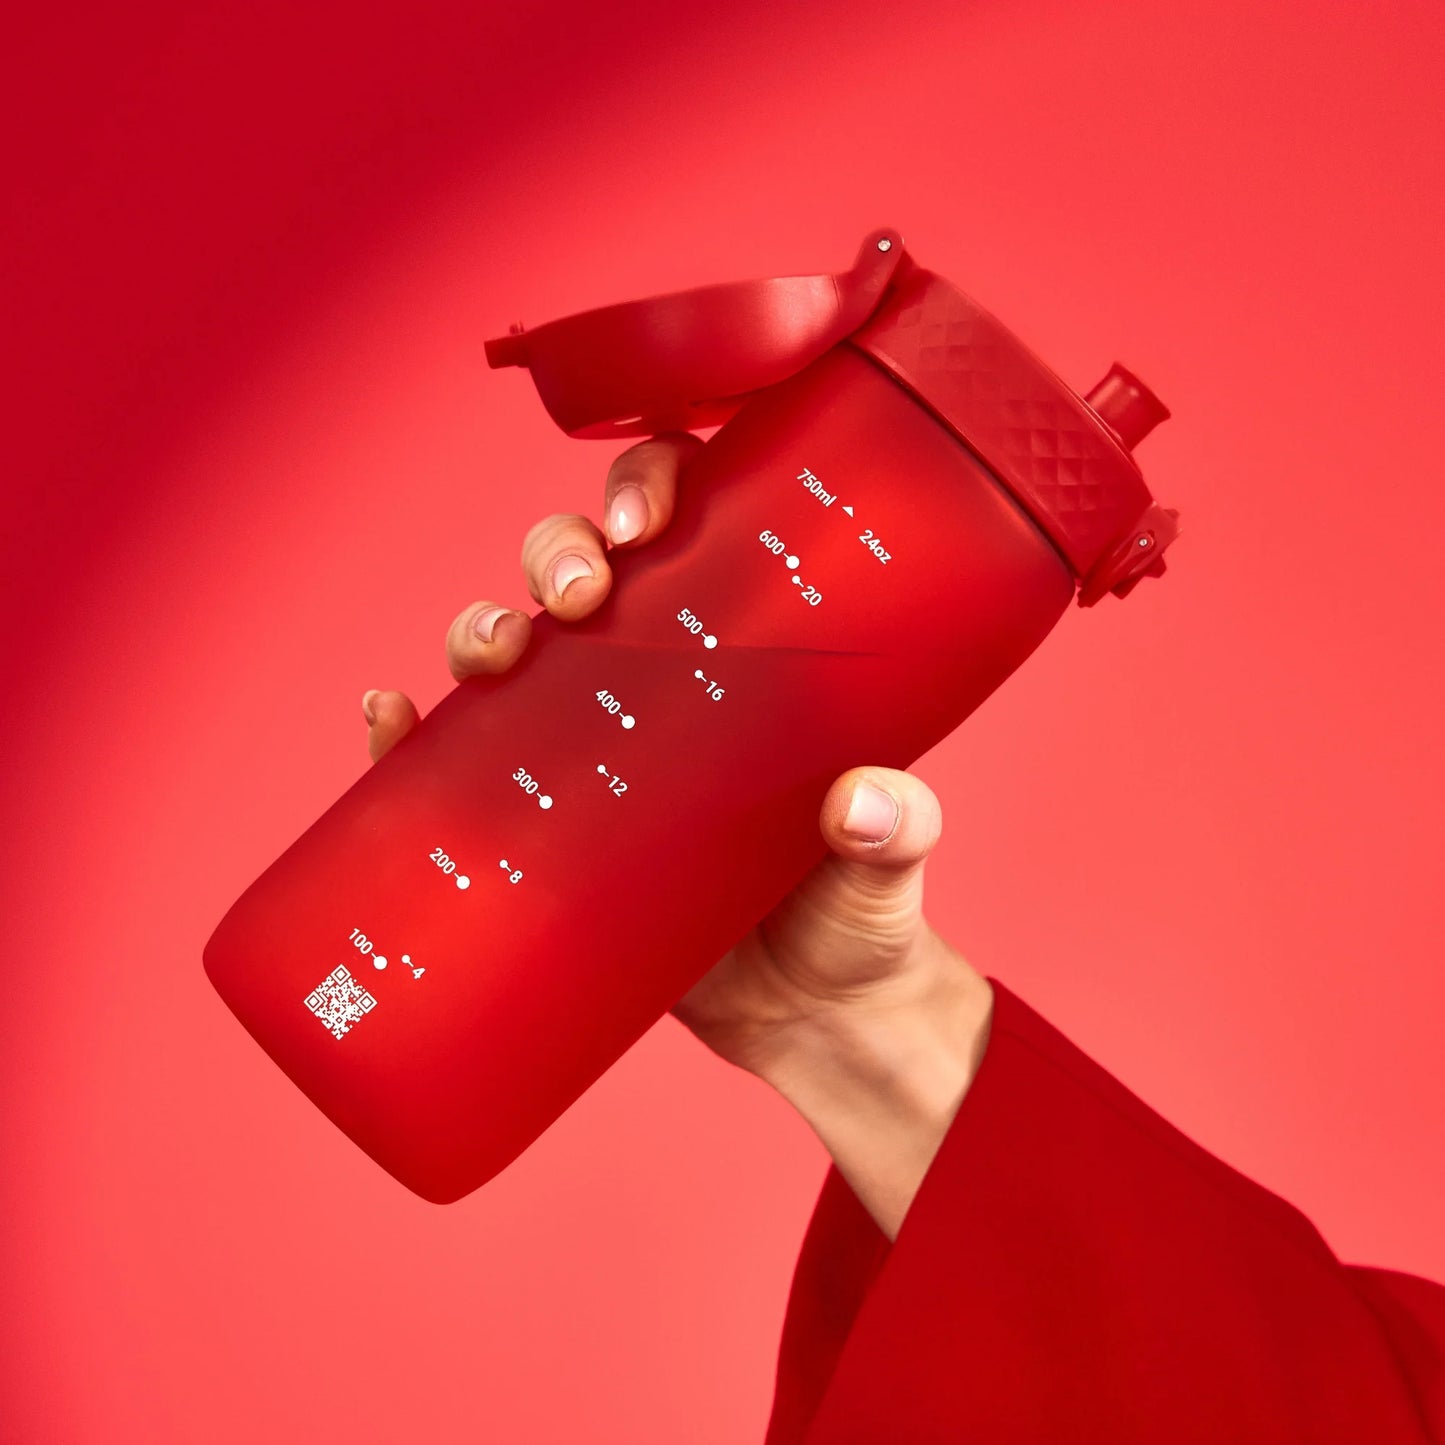 Leak Proof Water Bottle, Recyclon™, Red, 750ml (24oz)